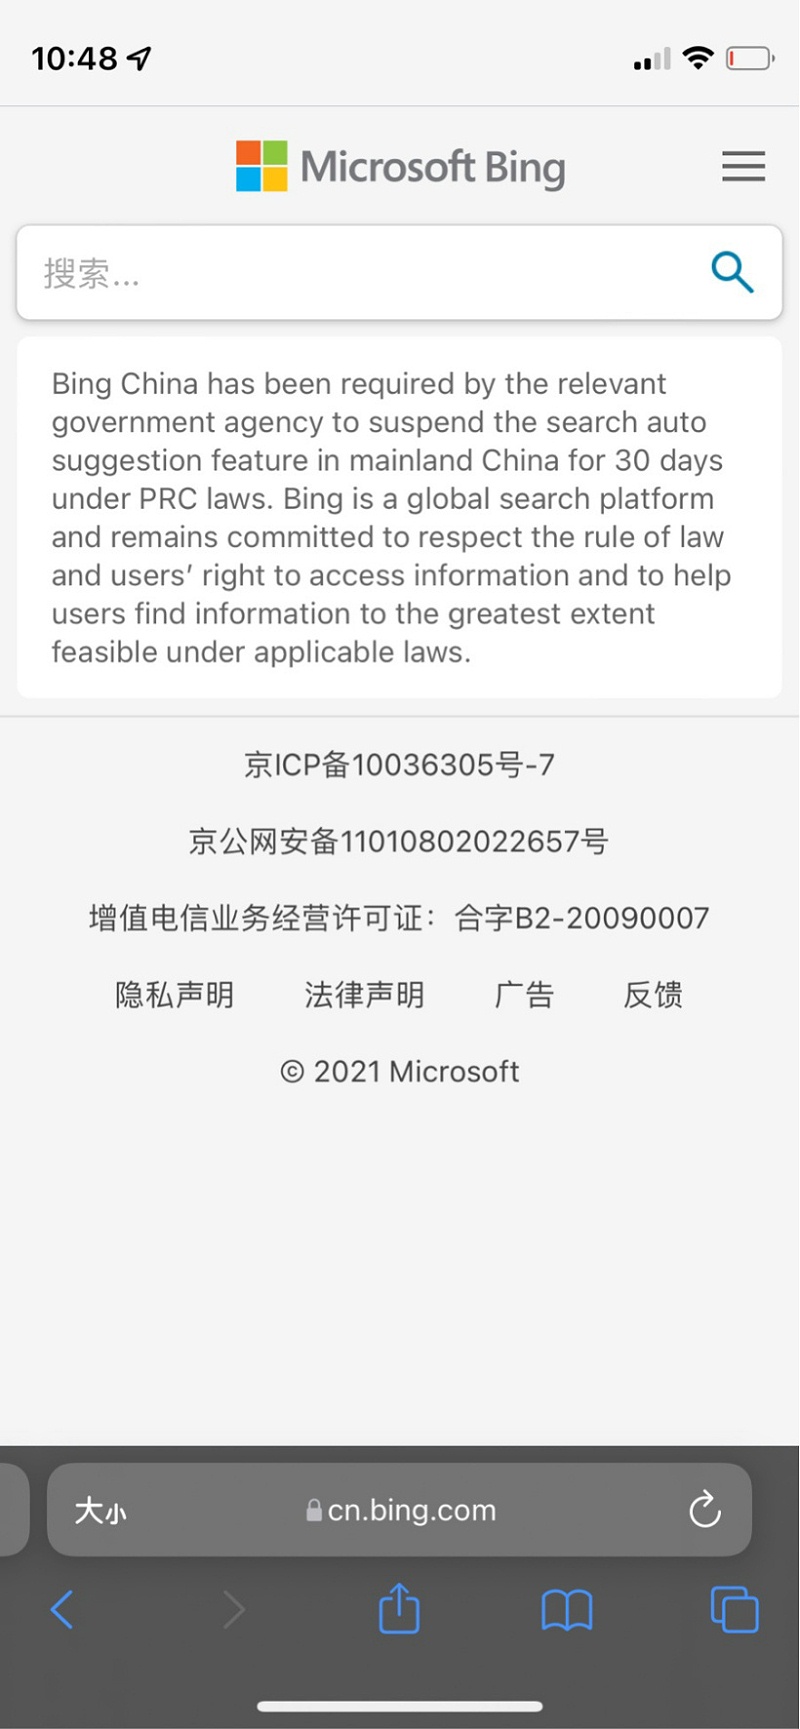 微软必应在中国内地暂停“搜索自动建议”功能30天28C9030427B_size174_w820_h1773